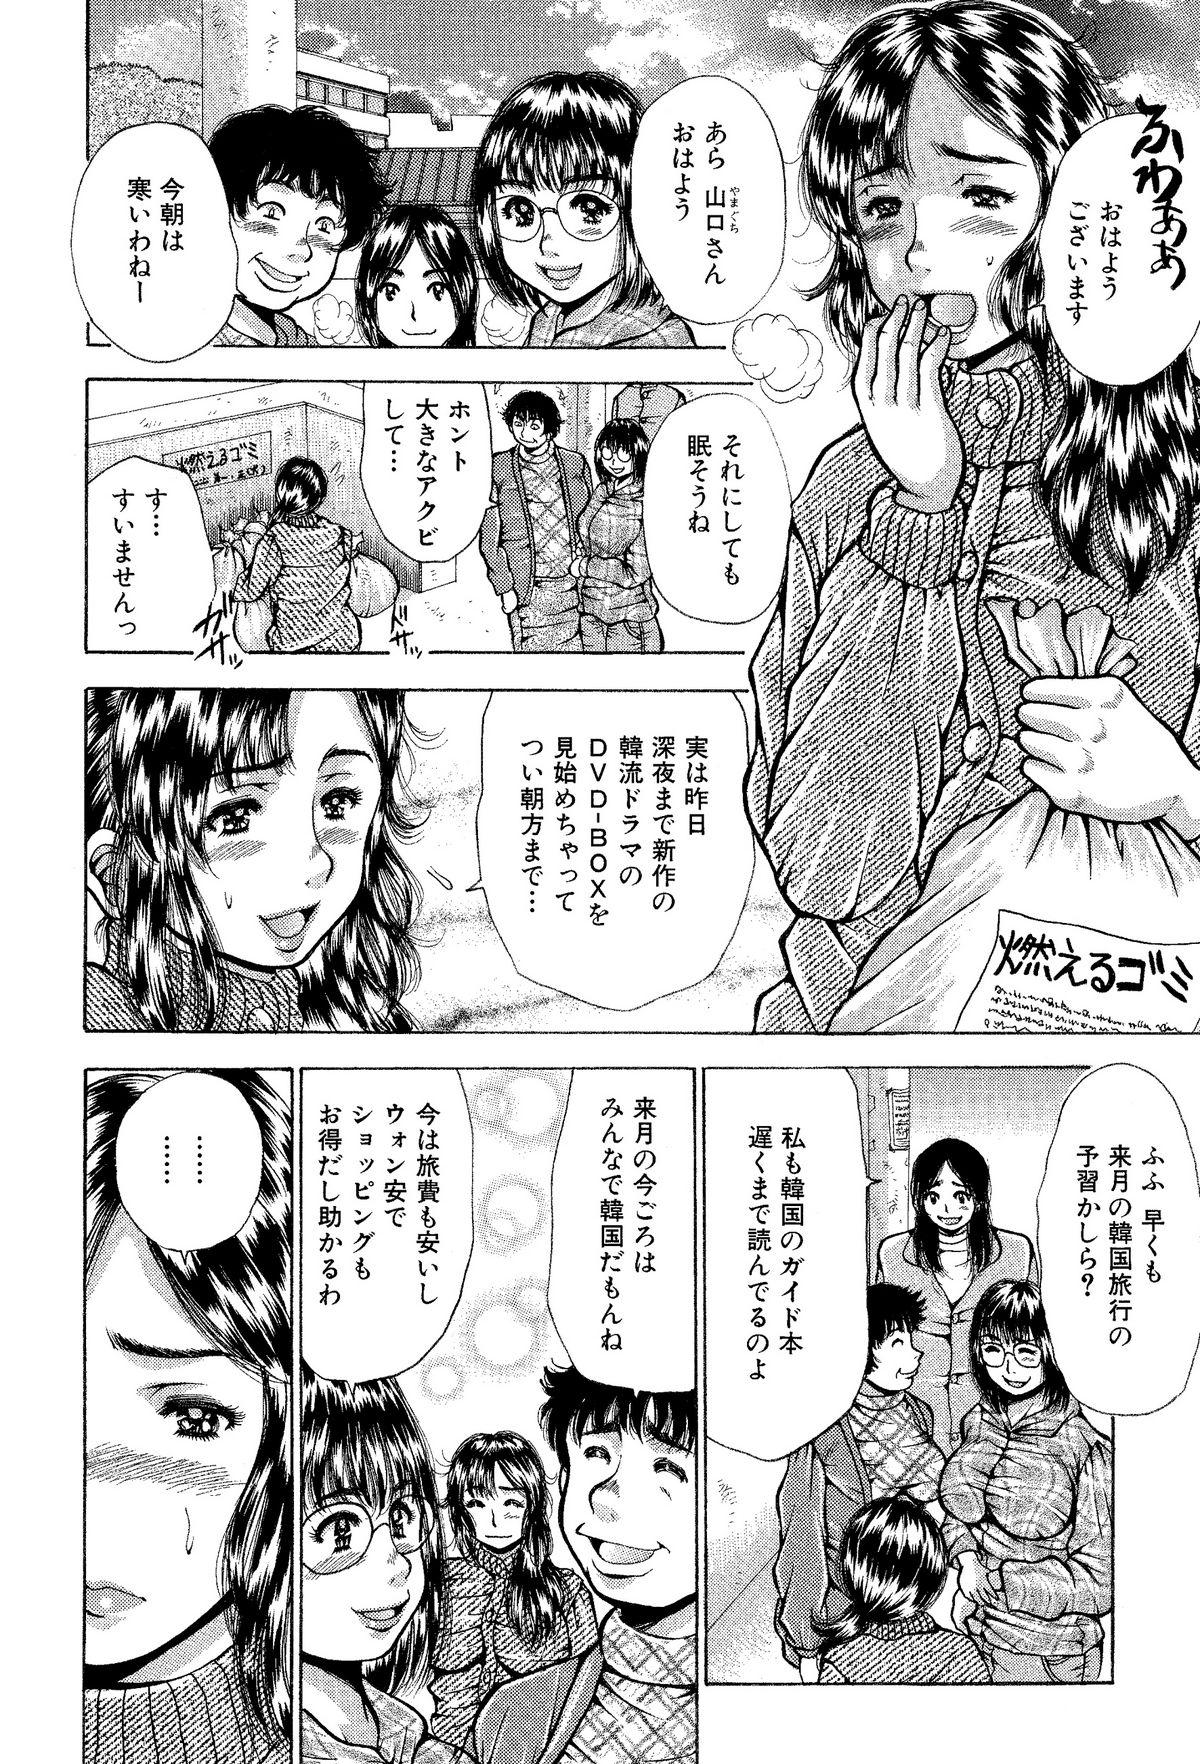 Hardcore Sex Itai Oku-san Manga o Atsumetemita 3some - Page 3